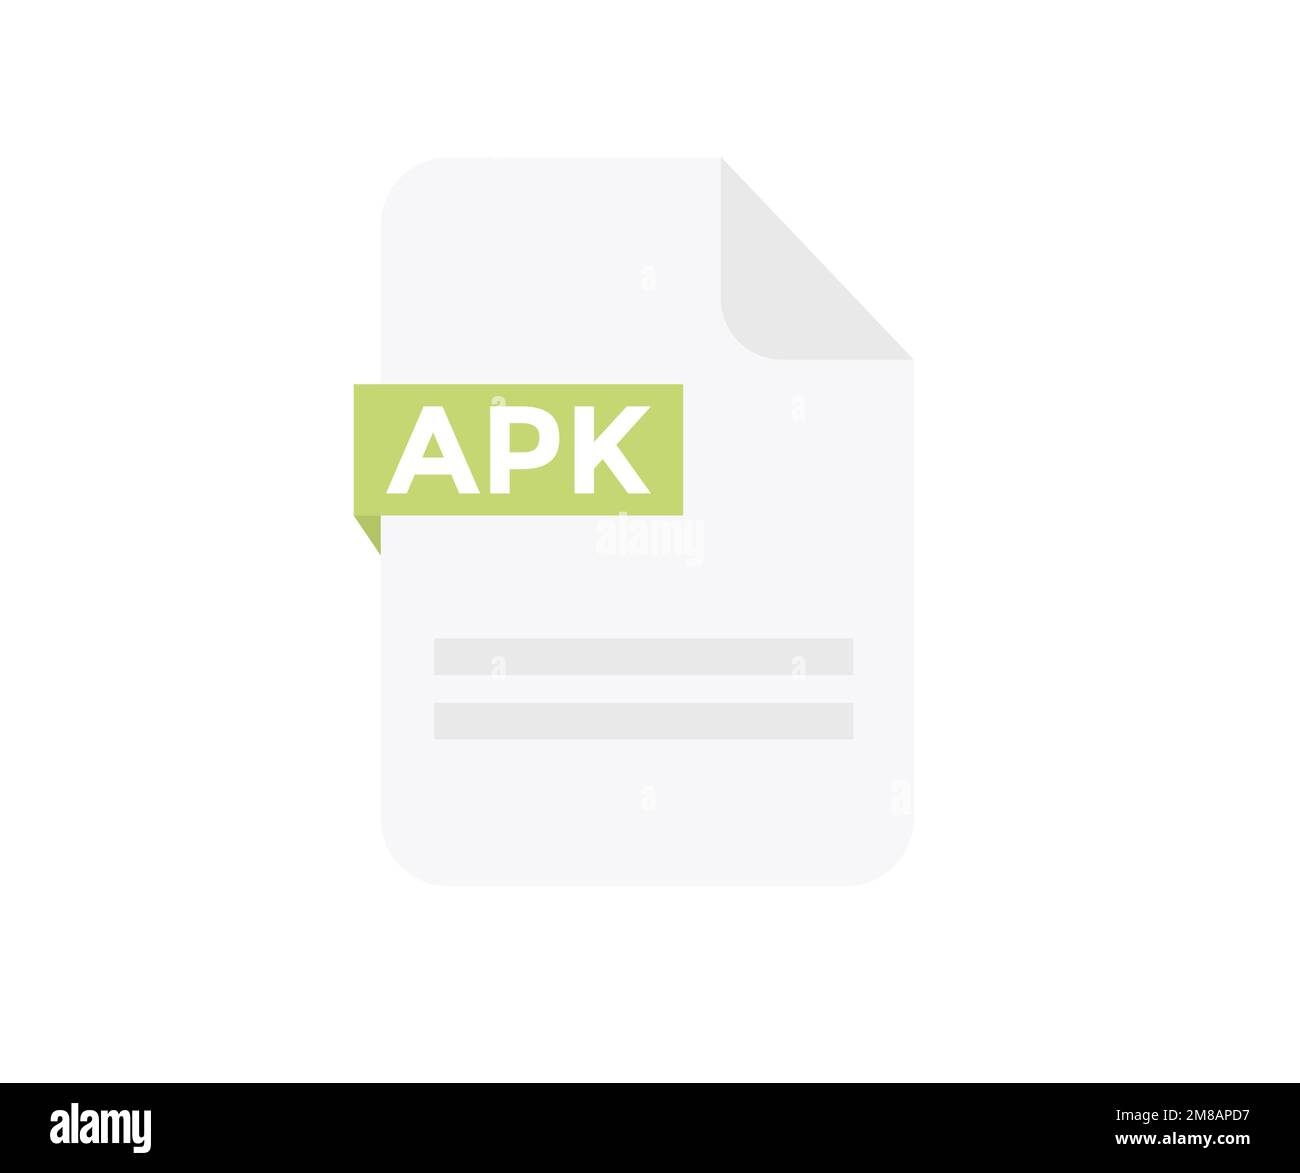 Formato file logo APK. Icona del documento, Internet, estensione, firma, tipo, presentazione, grafica, applicazione. Elemento per applicazioni. Illustrazione Vettoriale